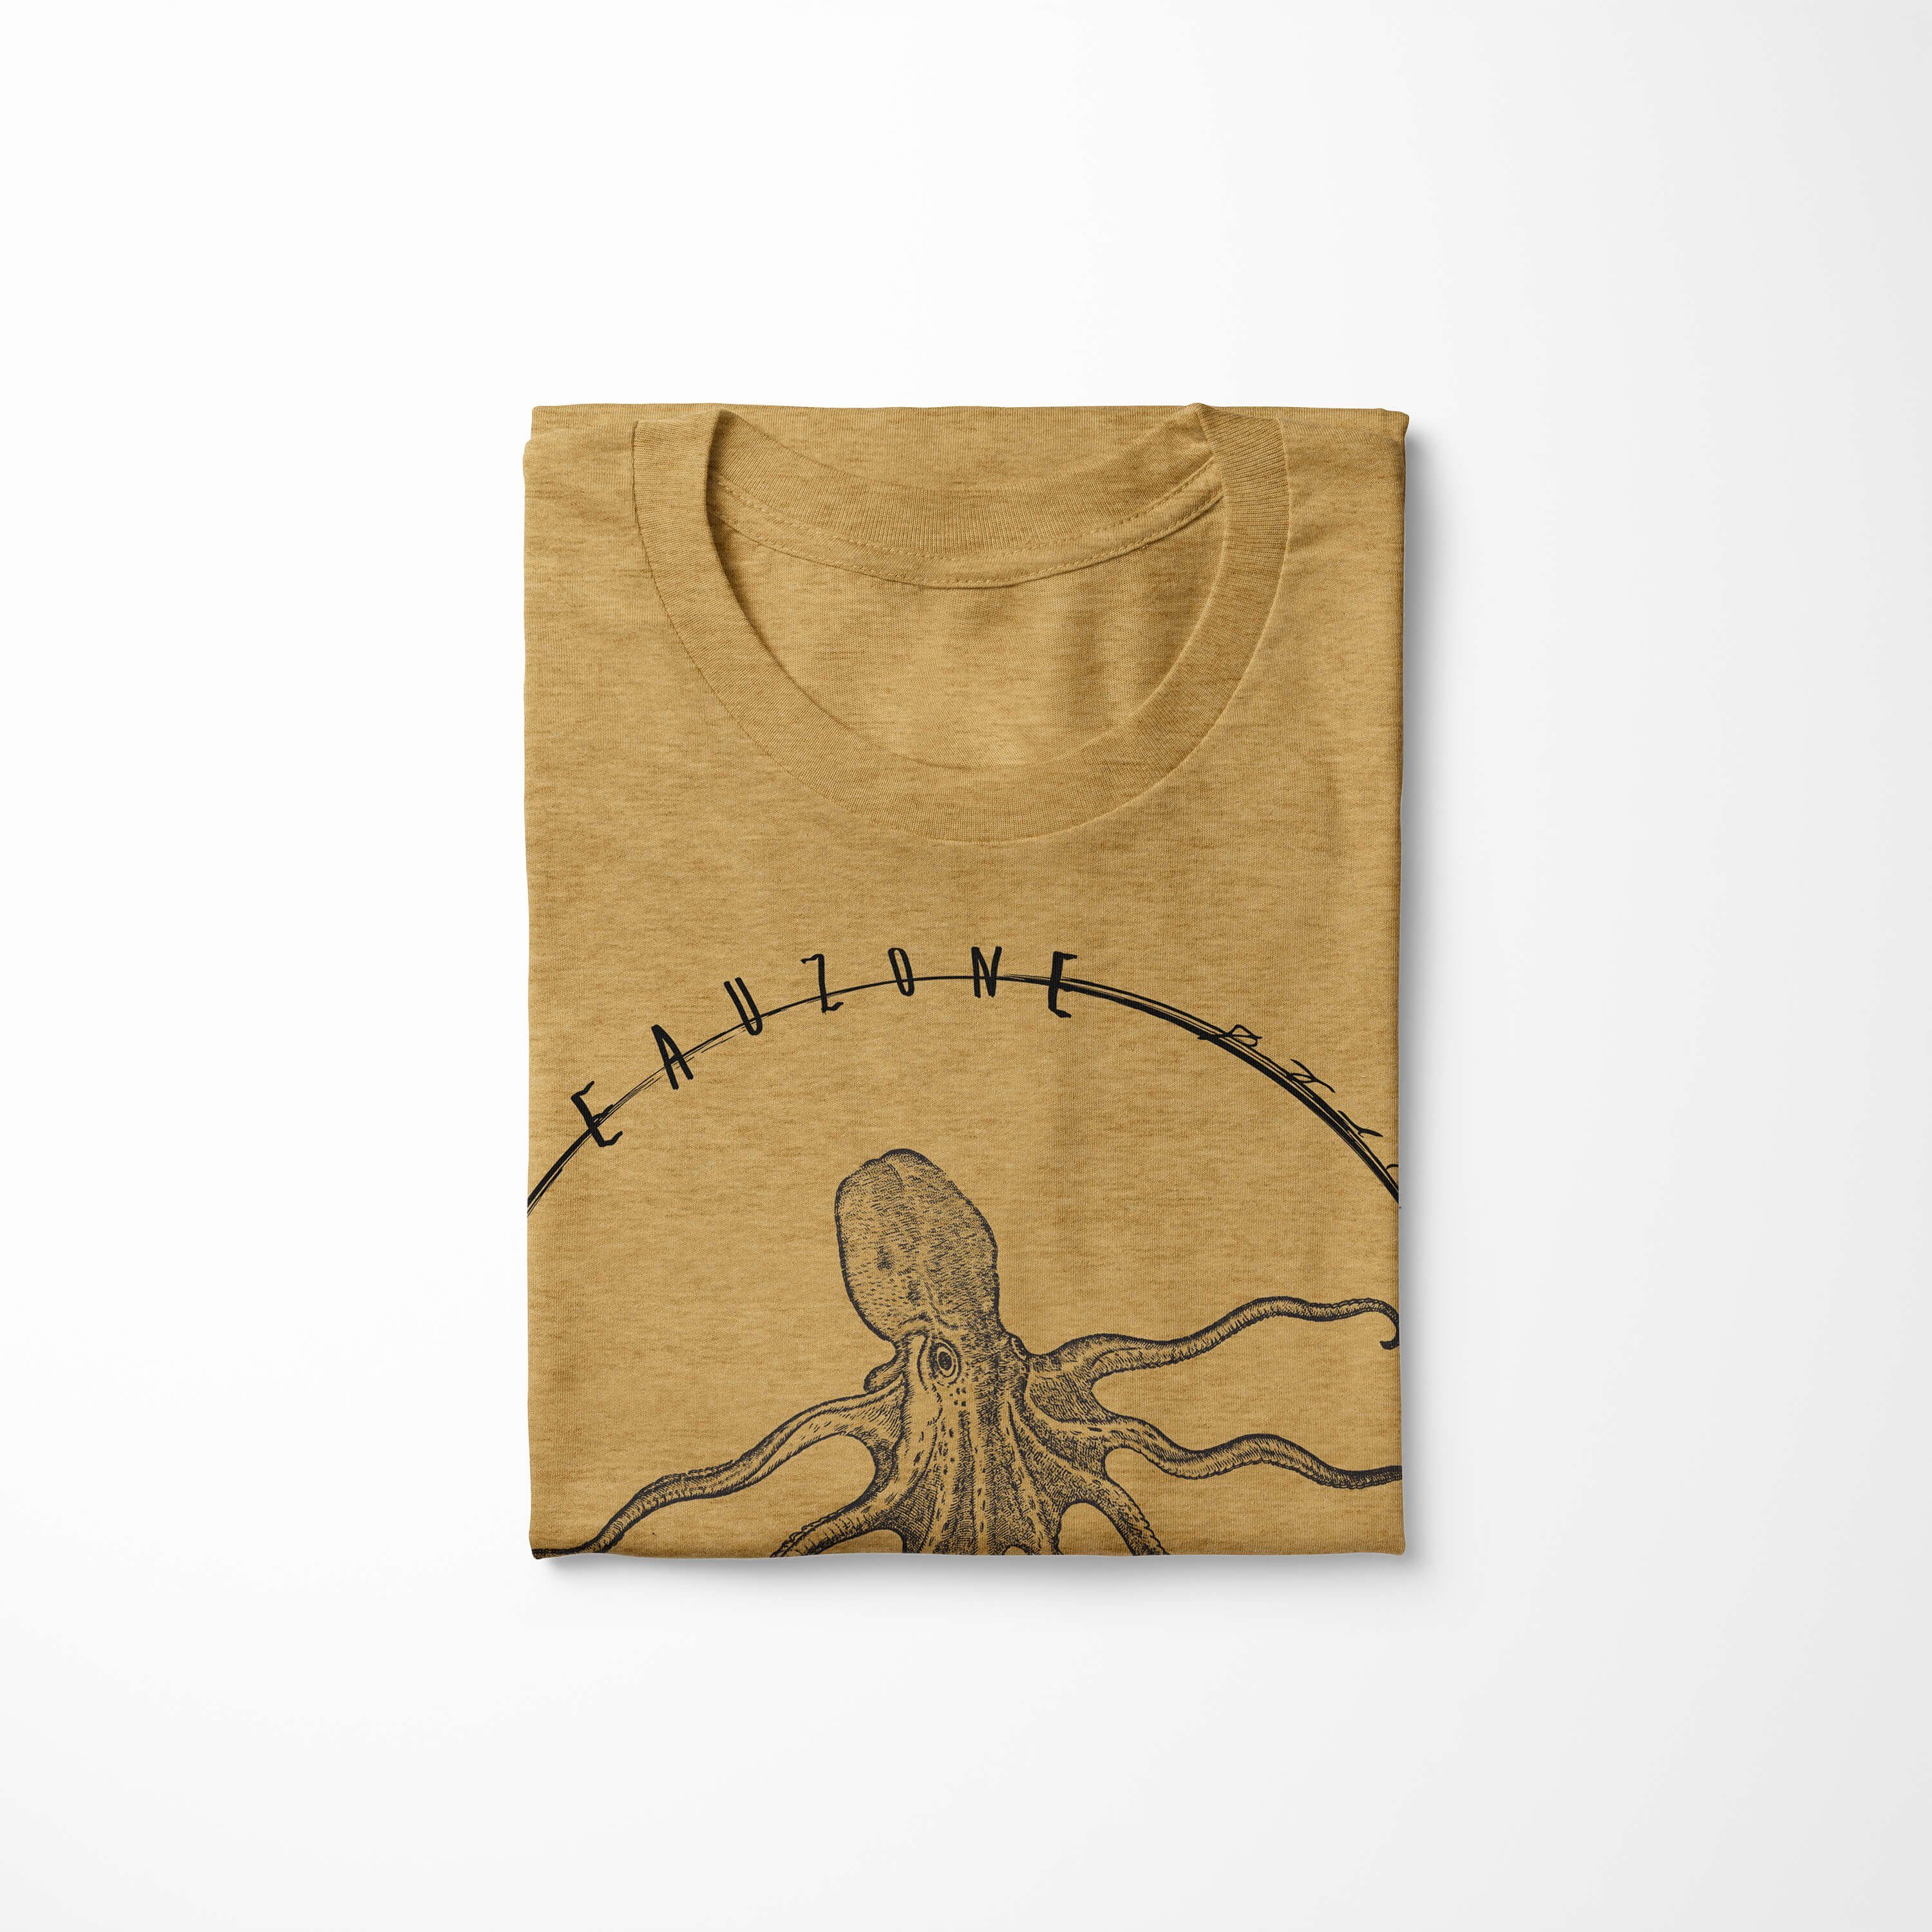 / und sportlicher 097 Antique Schnitt feine Sea Fische Serie: Tiefsee Art Creatures, Sea Sinus Struktur T-Shirt T-Shirt - Gold